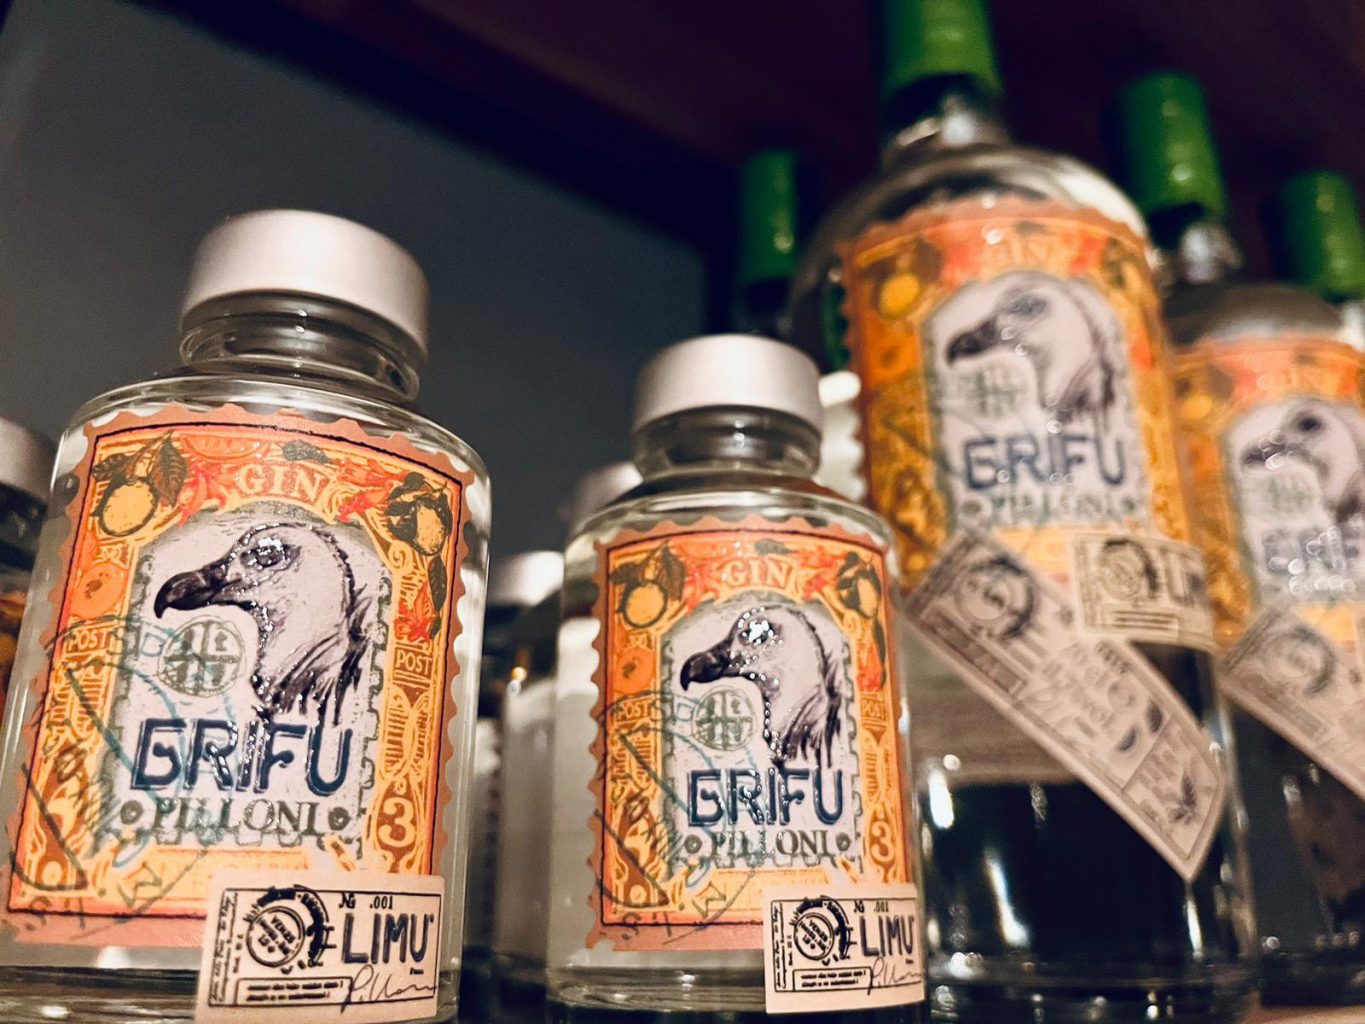 Grifu Gin